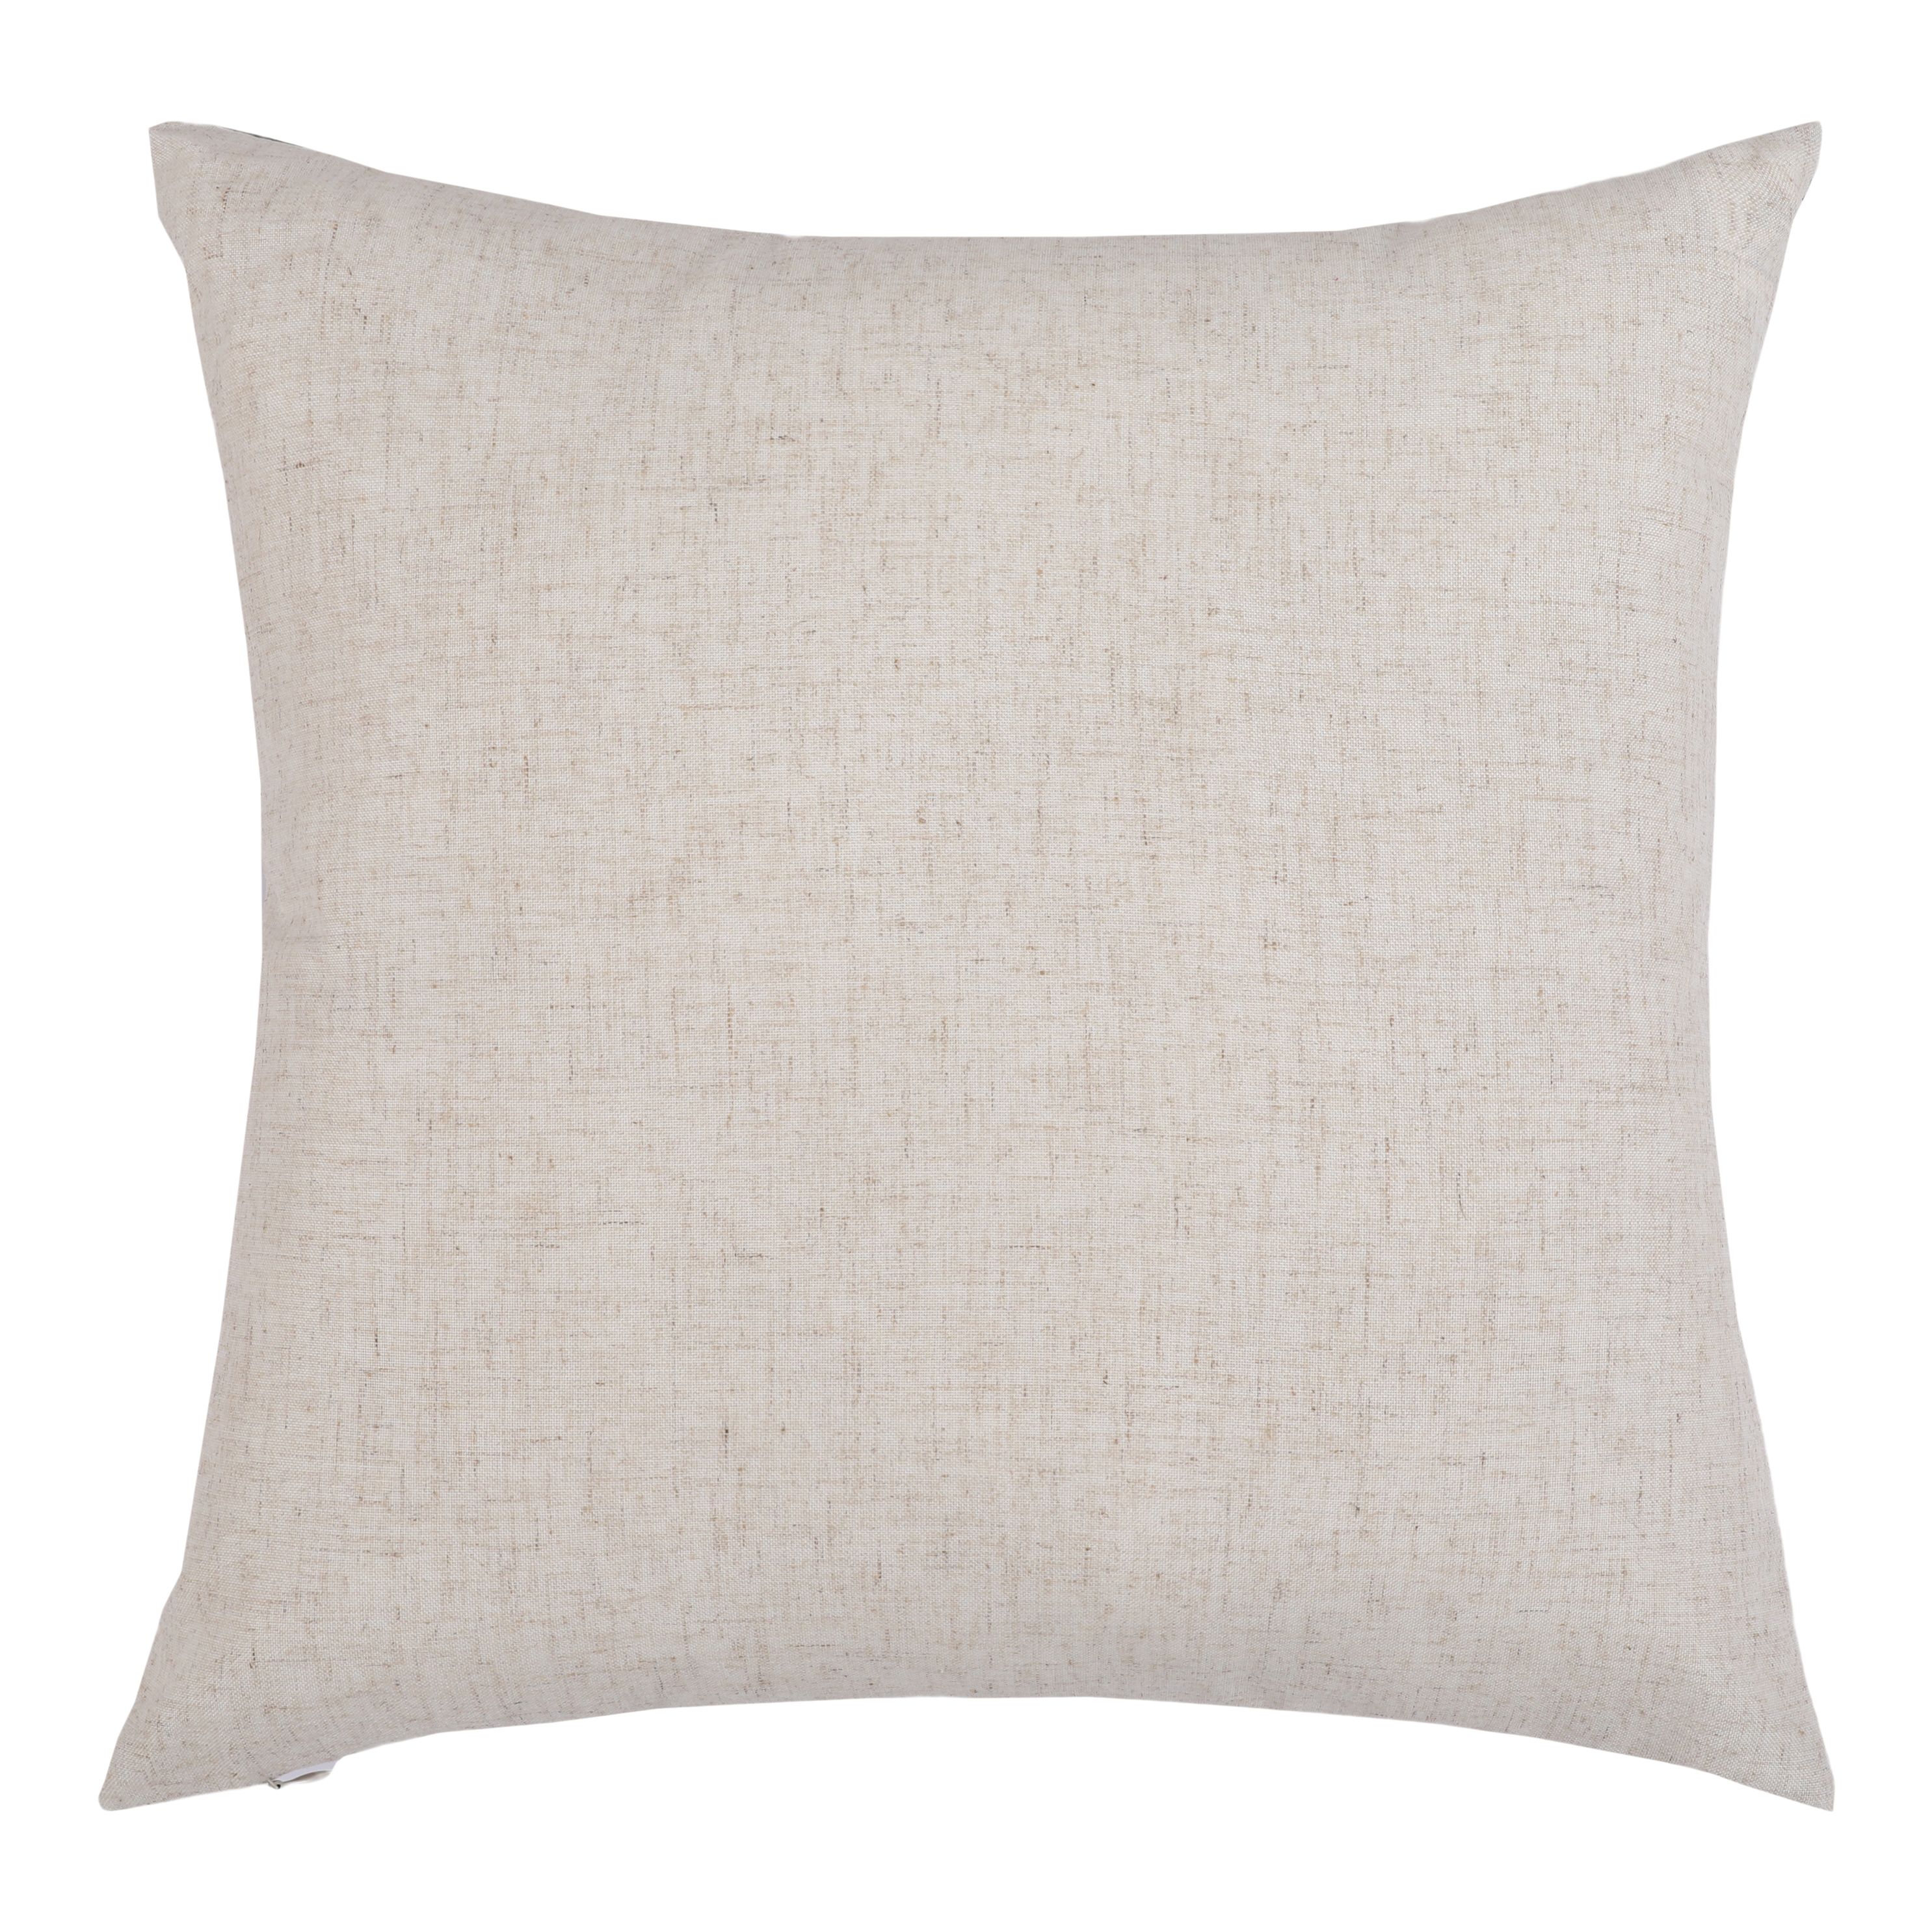 Orange & Grey Leaf Indoor Cushion (L)43cm x (W)43cm